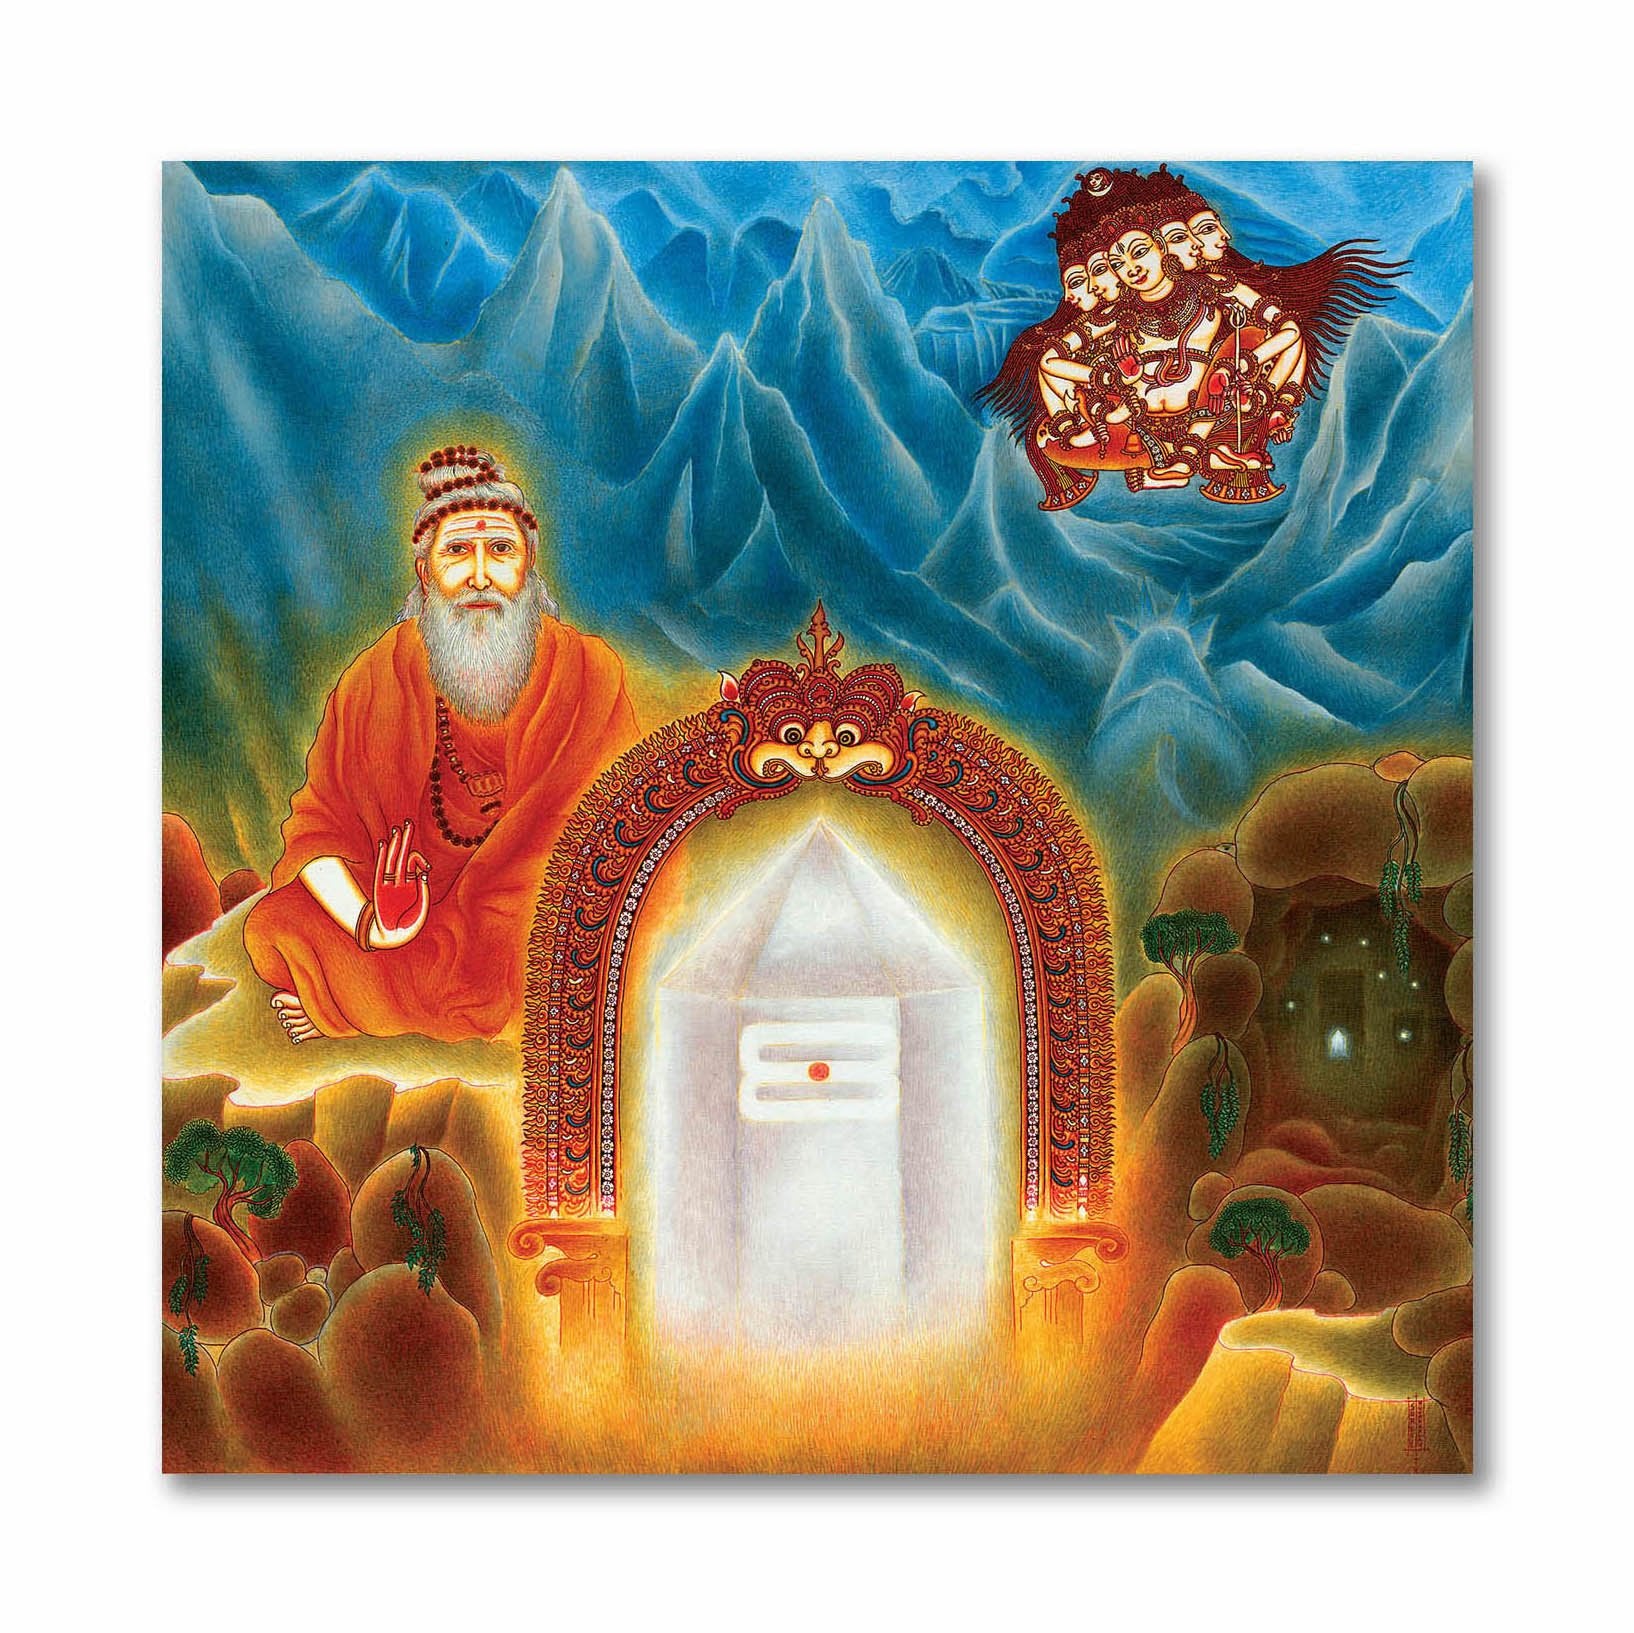 Priyabhakta Favorite Of The Devotees